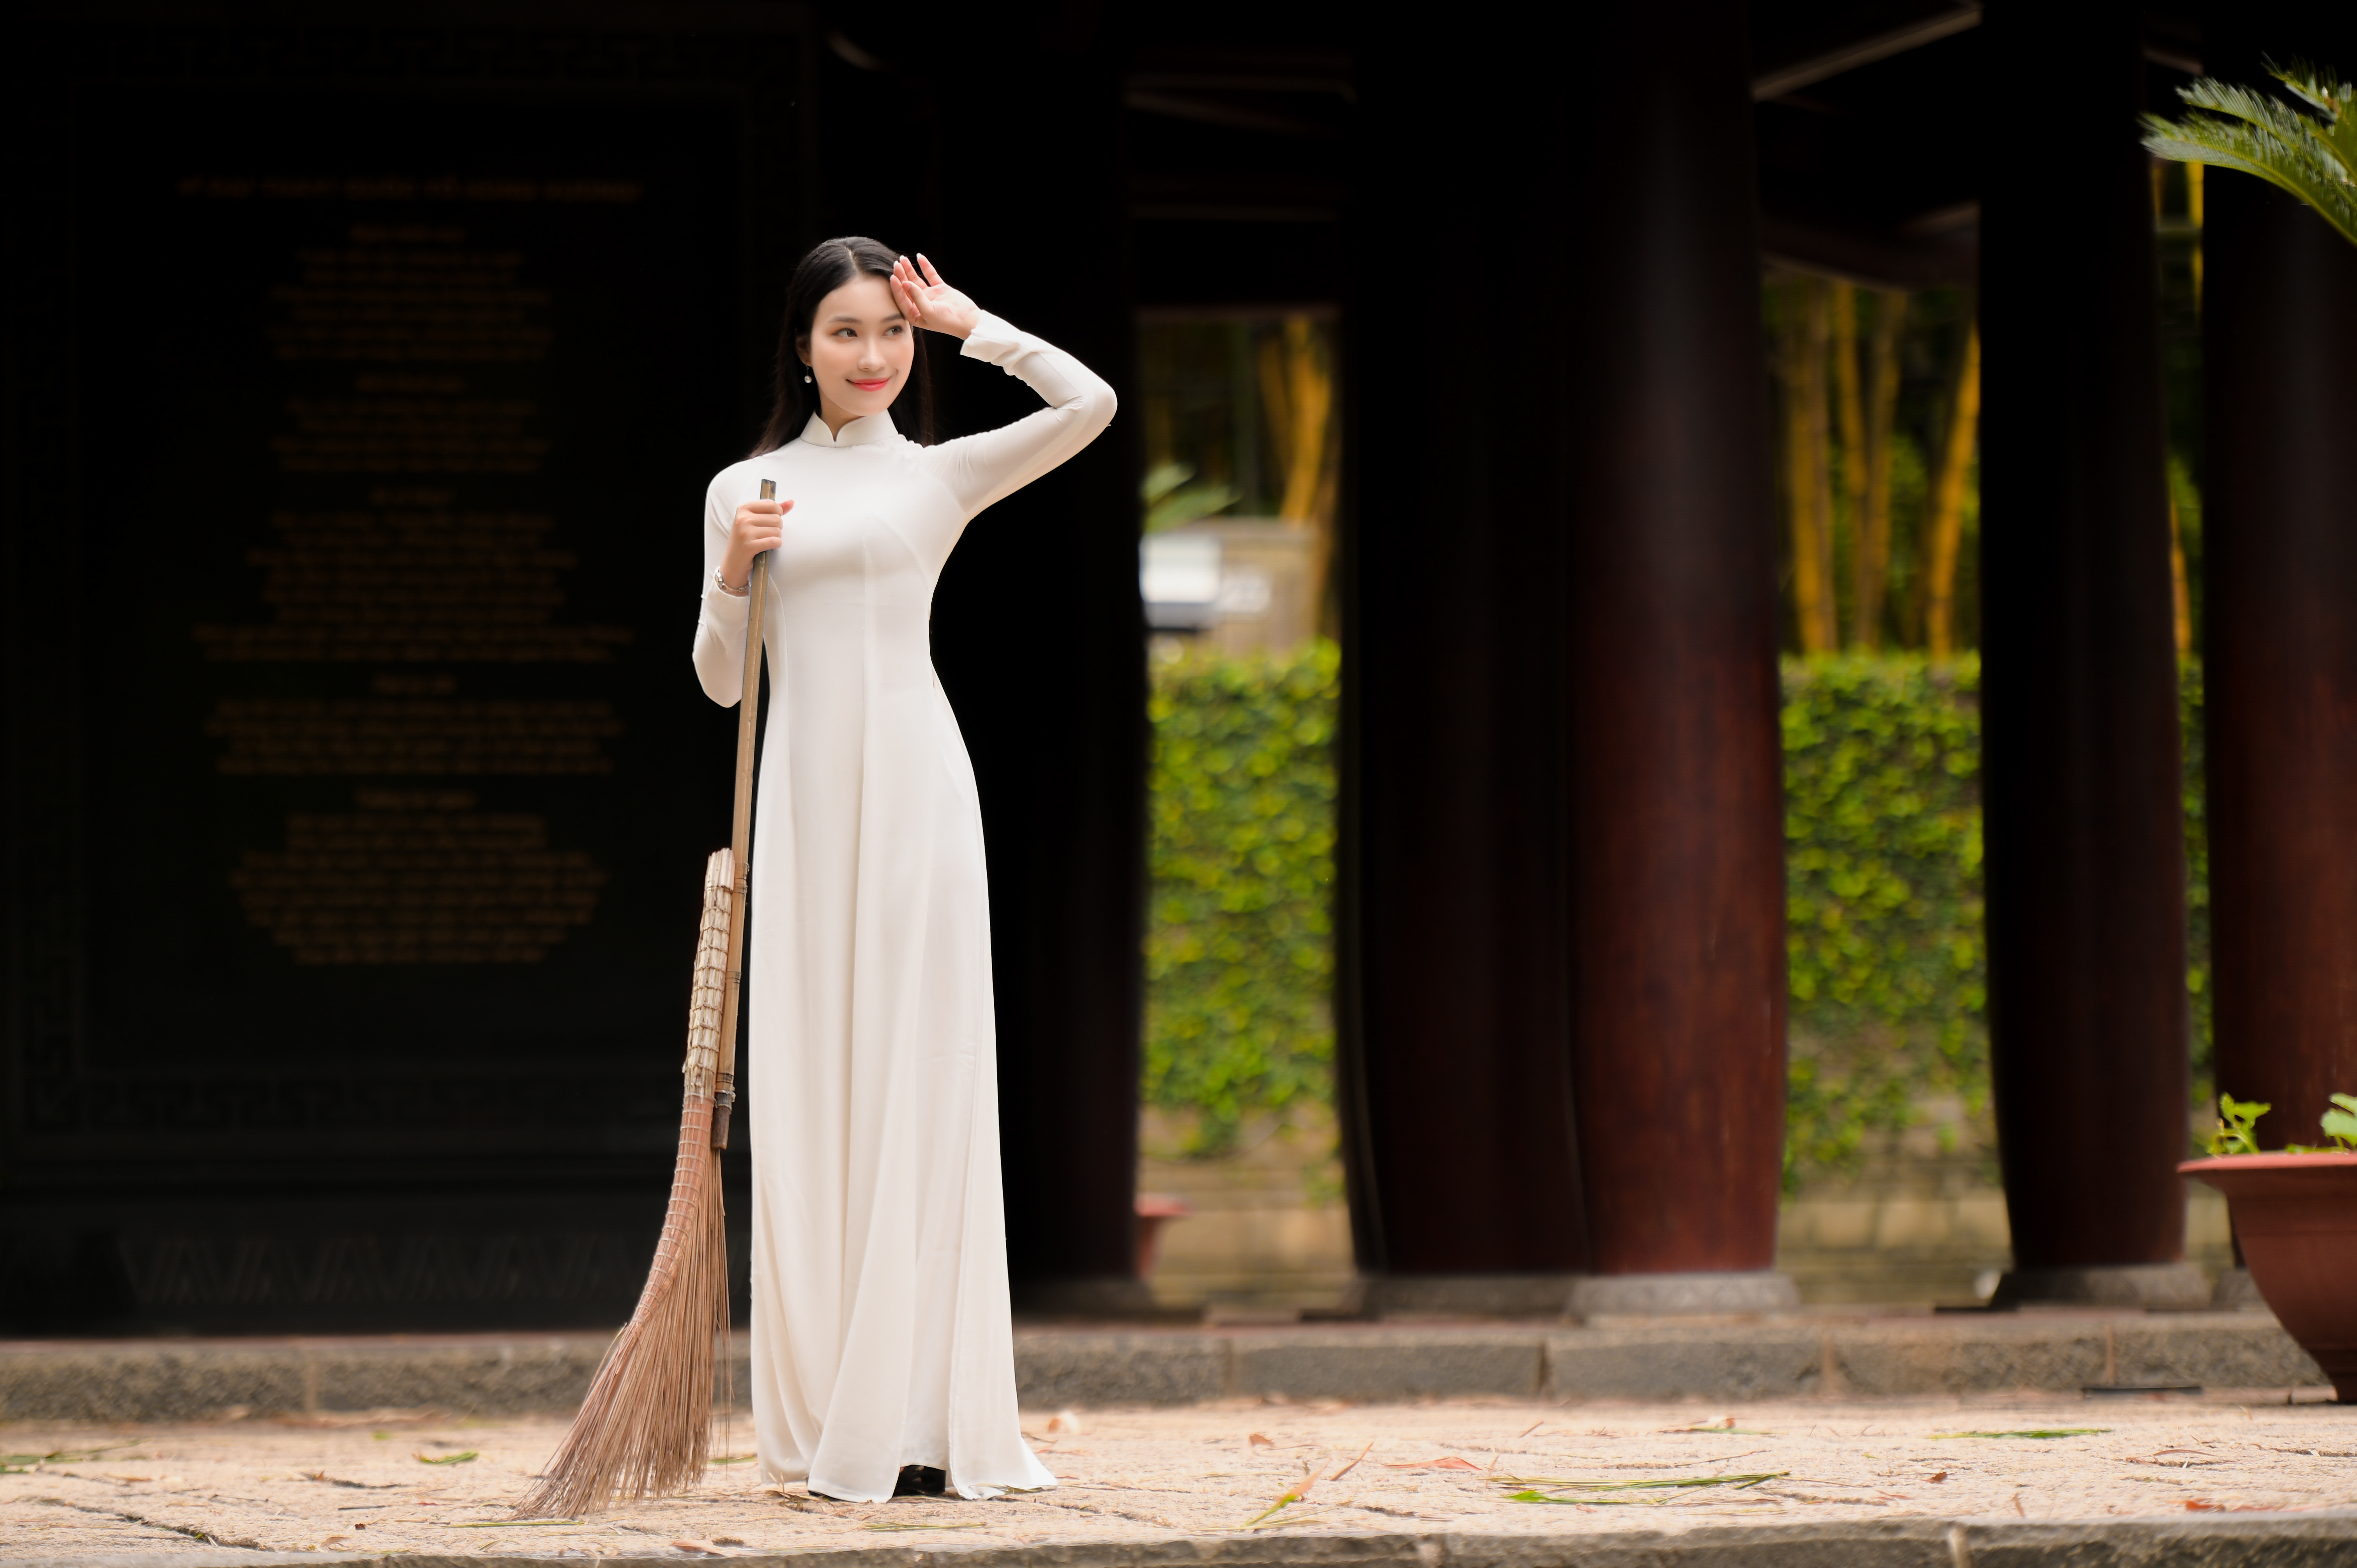 Áo dài là một biểu tượng của văn hóa Việt Nam.